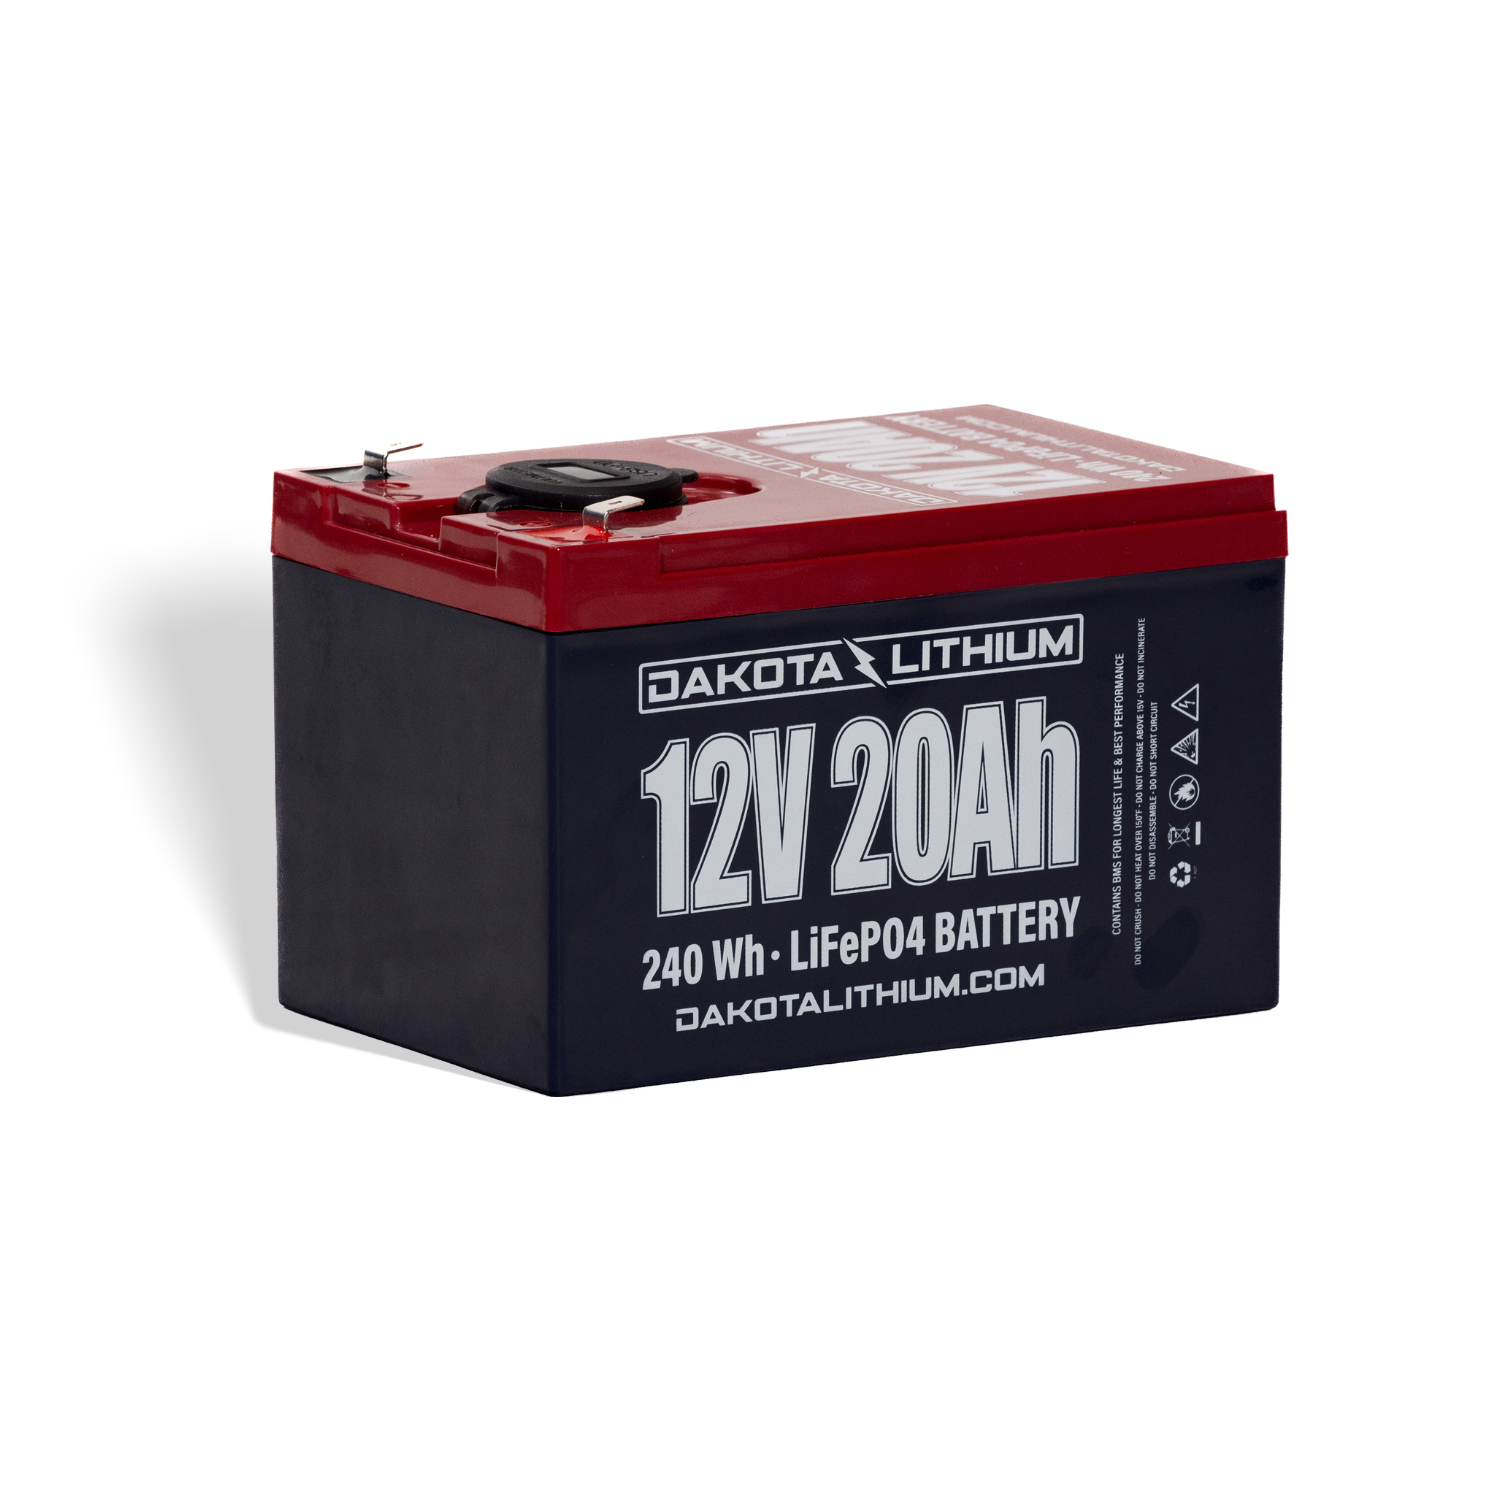 Dakota Lithium 12v 20Ah Battery